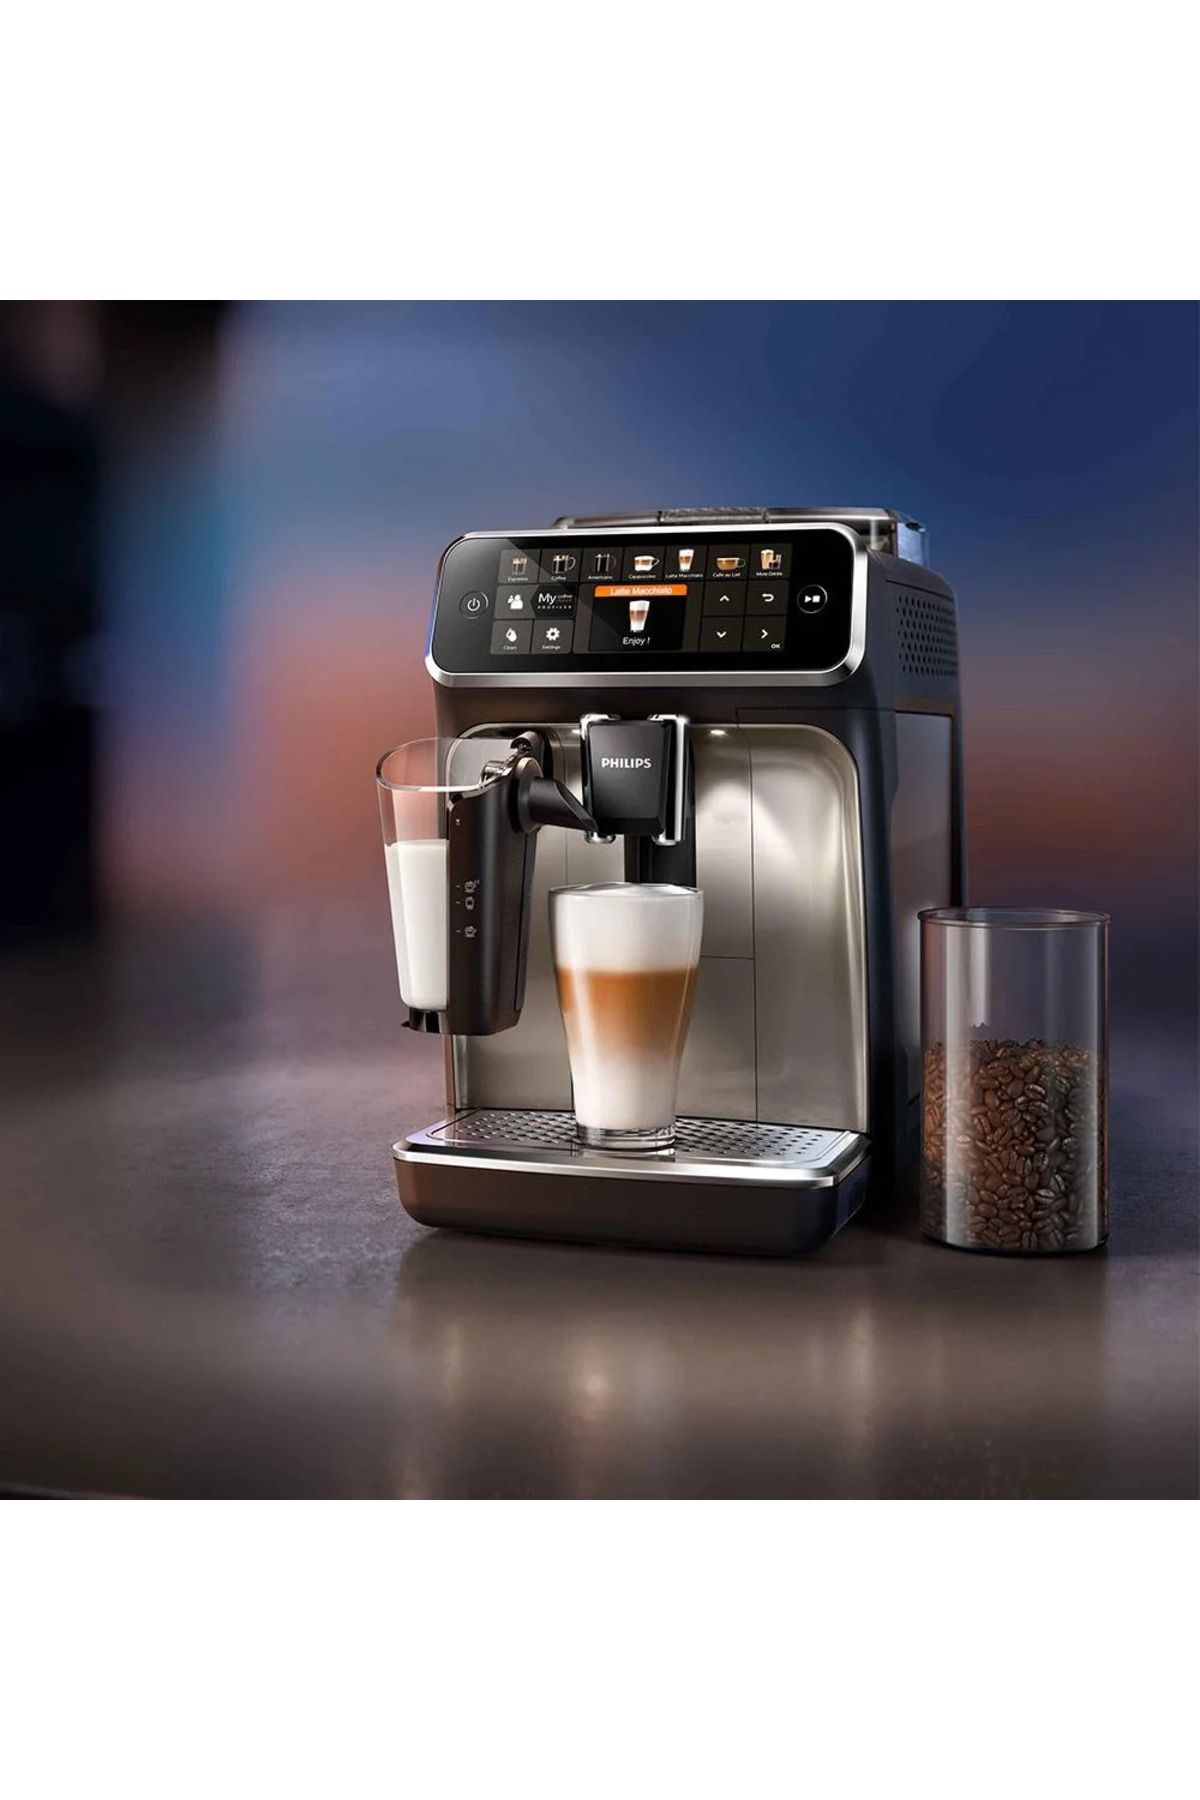 Philips LatteGo , süt çözümü TFT ekran , 12 farklı kahve 5400 TAM OTOMATİK ESPRESSO-LATTE MAKİNESİ